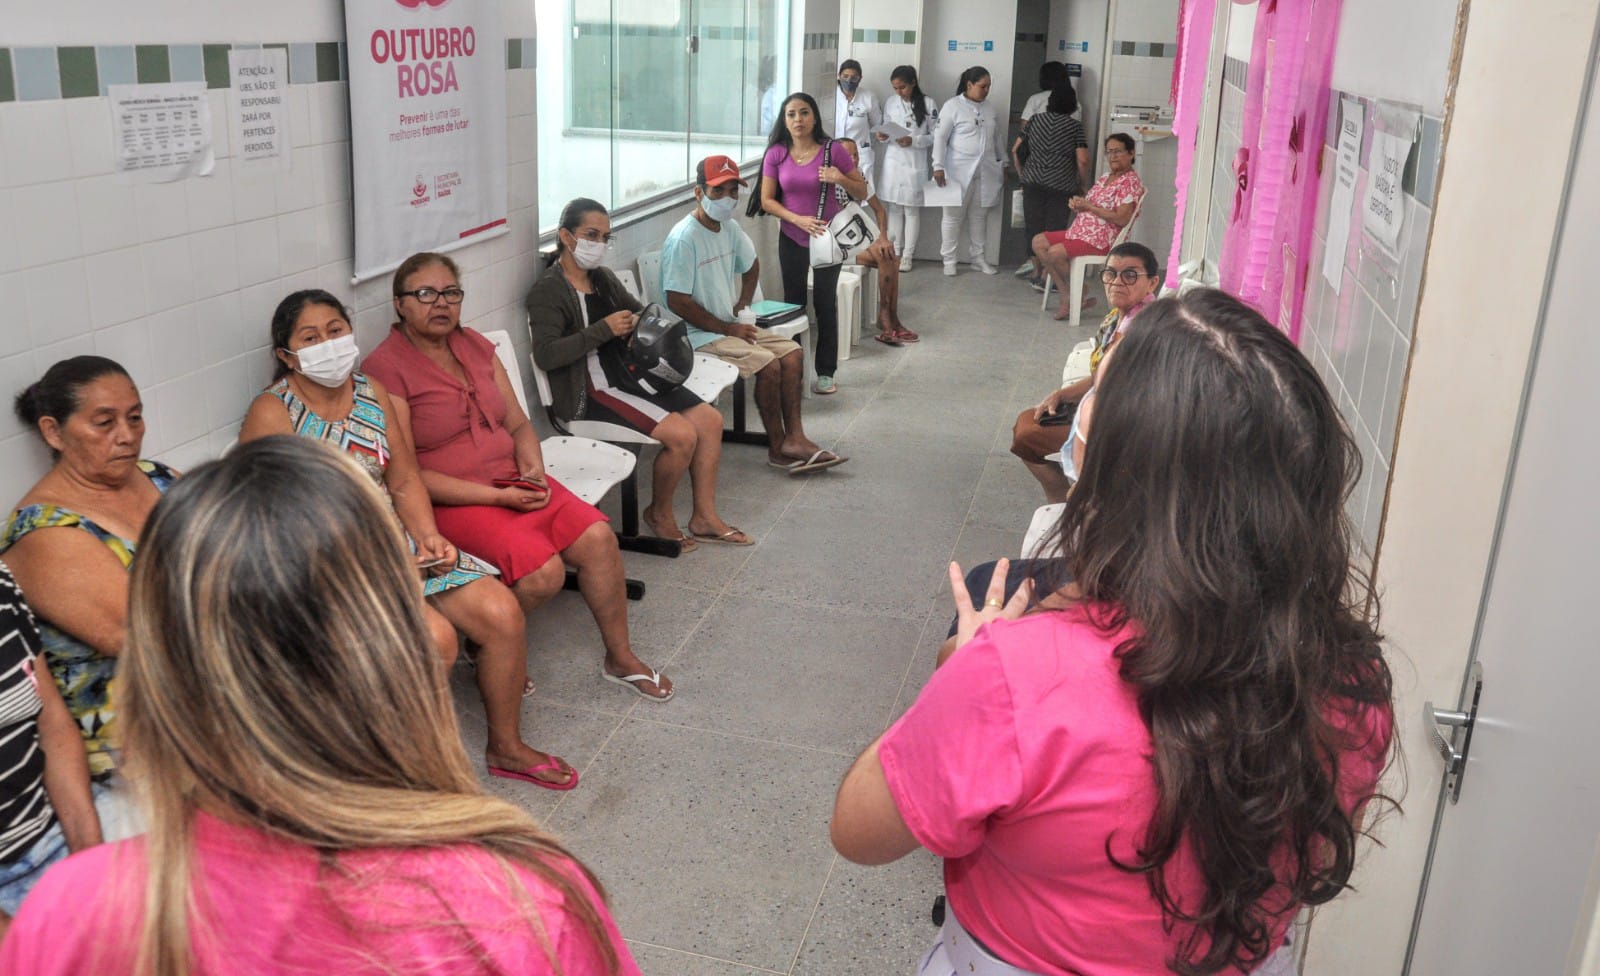 UBS Antônio Camilo promove ações alusivas à campanha "Outubro Rosa"